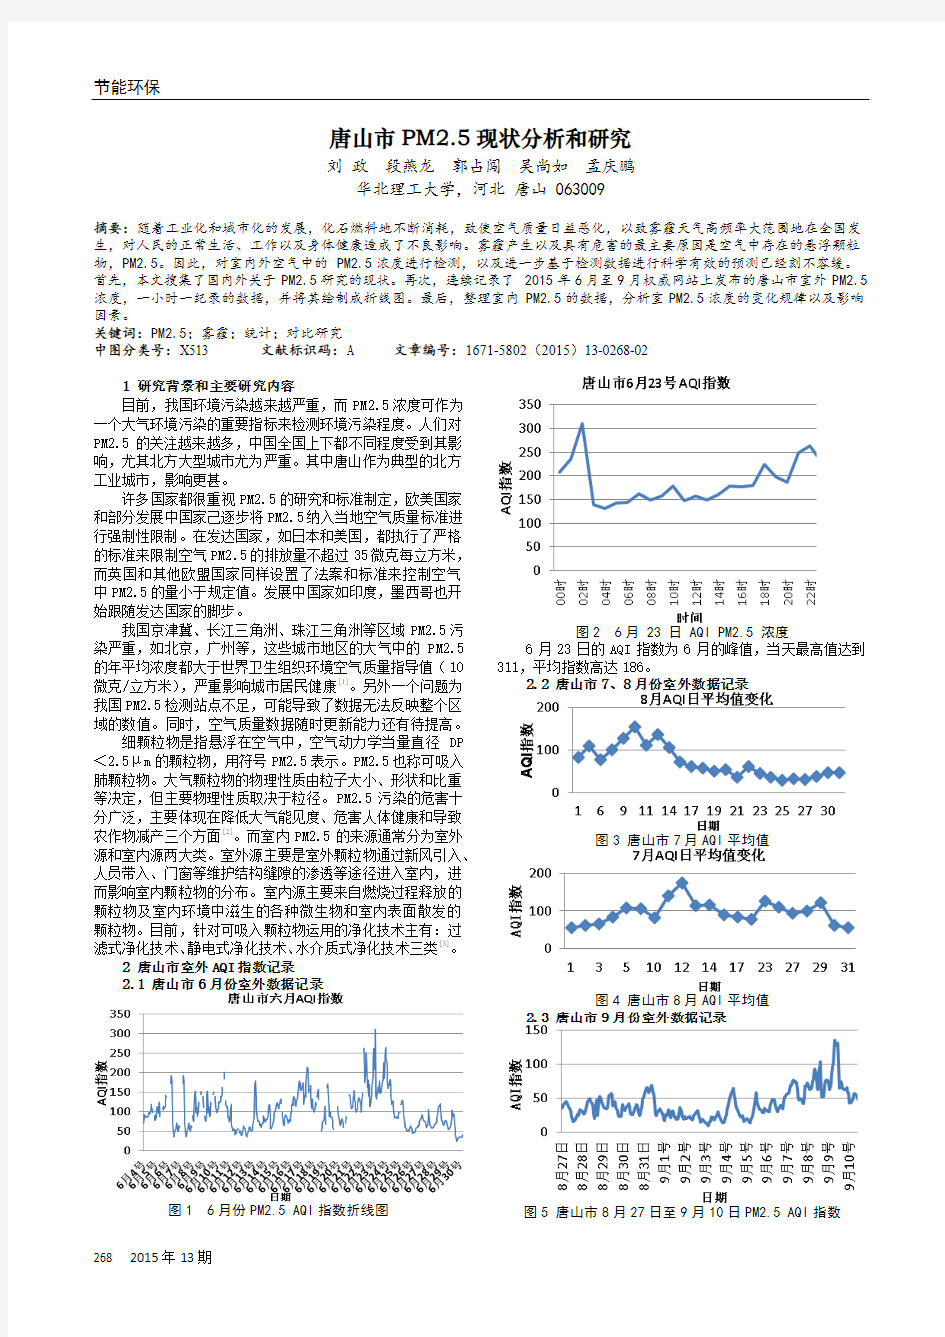 唐山市PM2.5现状分析和研究